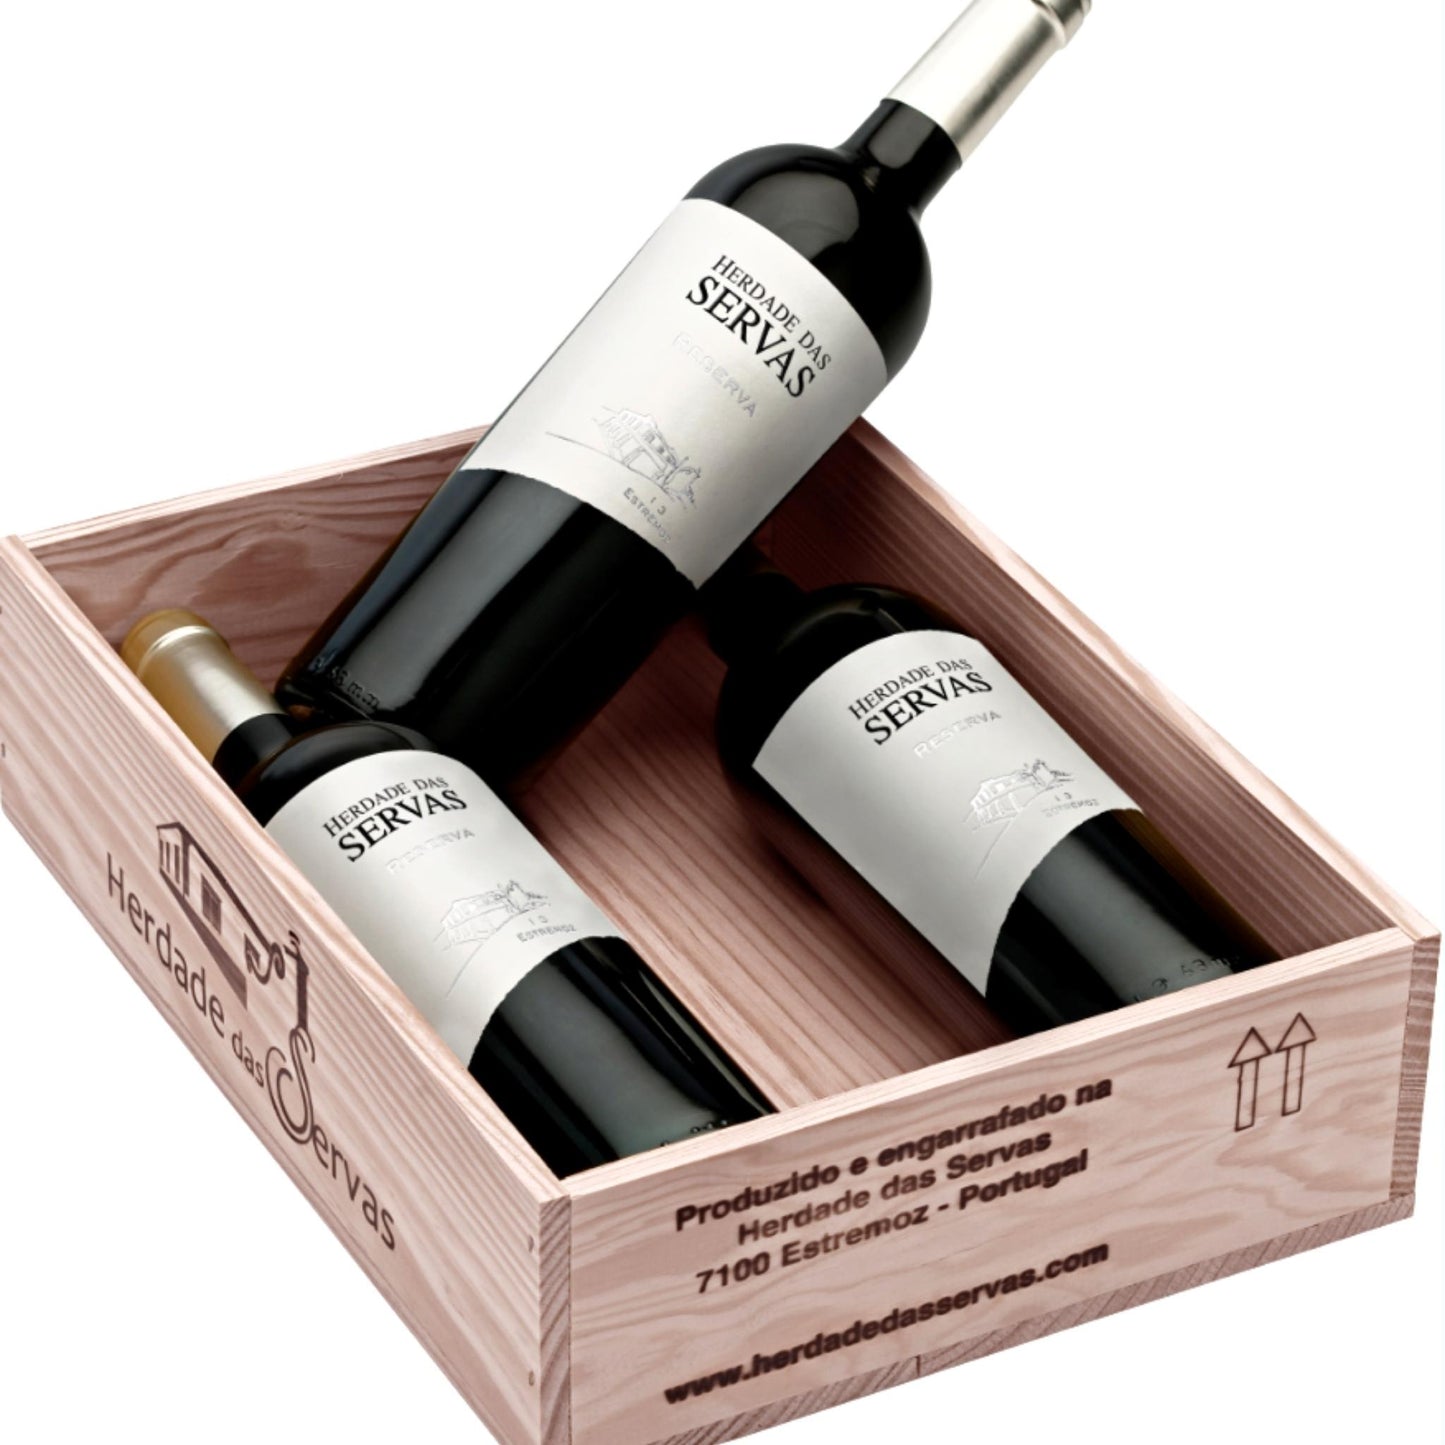 
                  
                    HERDADE DAS SERVAS RESERVA: Rotwein vom Weingut Herdade das Servas aus der Region Estremoz – Alentejo/Portugal. Als 3er Set verpackt in einer Holzkiste.
                  
                